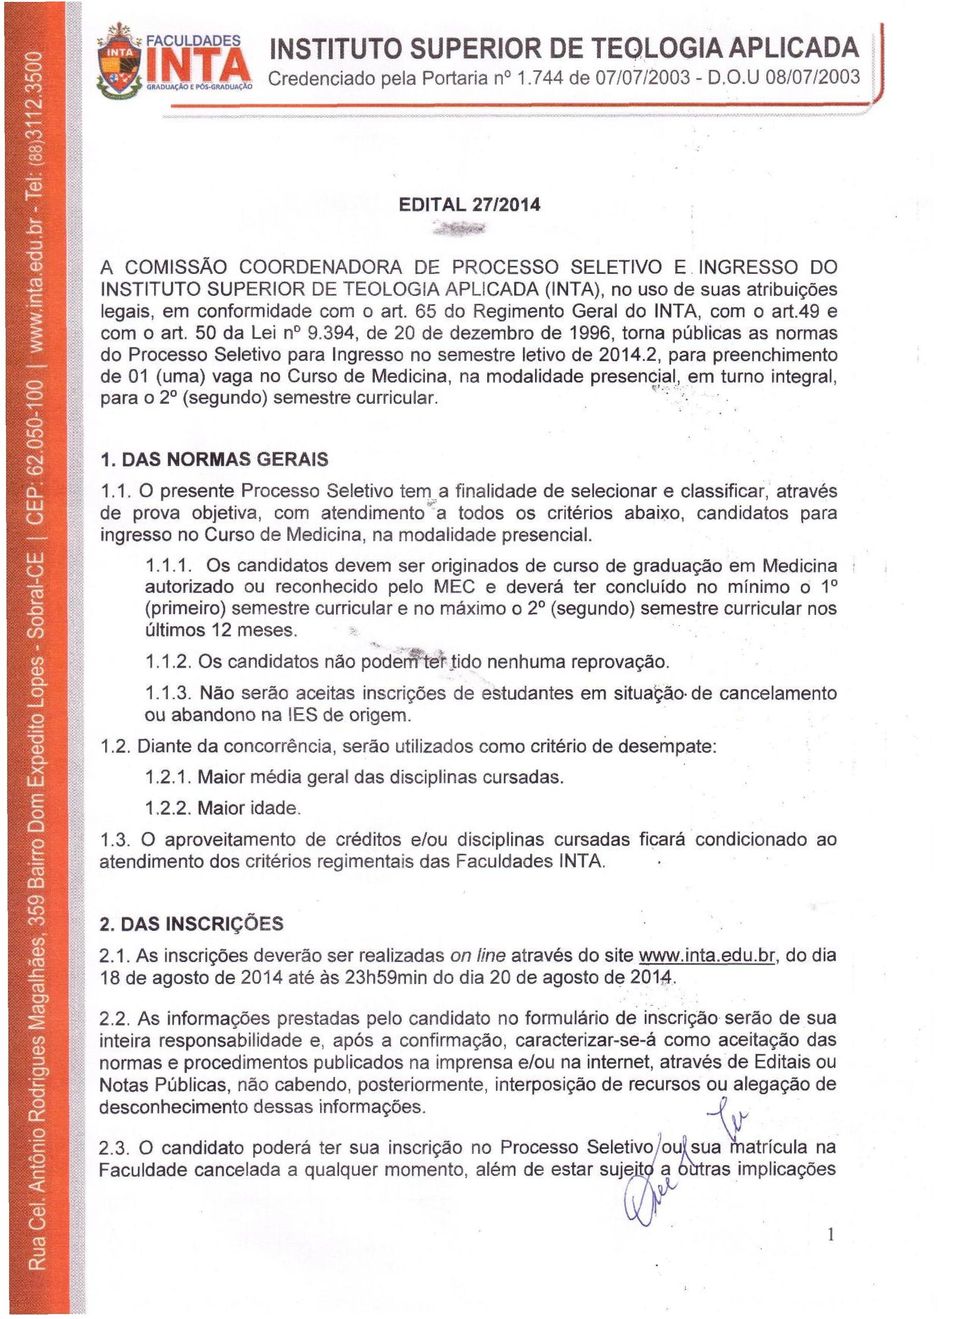 394, de 20 de dezembro de 1996, torna publicae as normas do Processo Seletivo para Ingresso no semestre letivo de 2014.